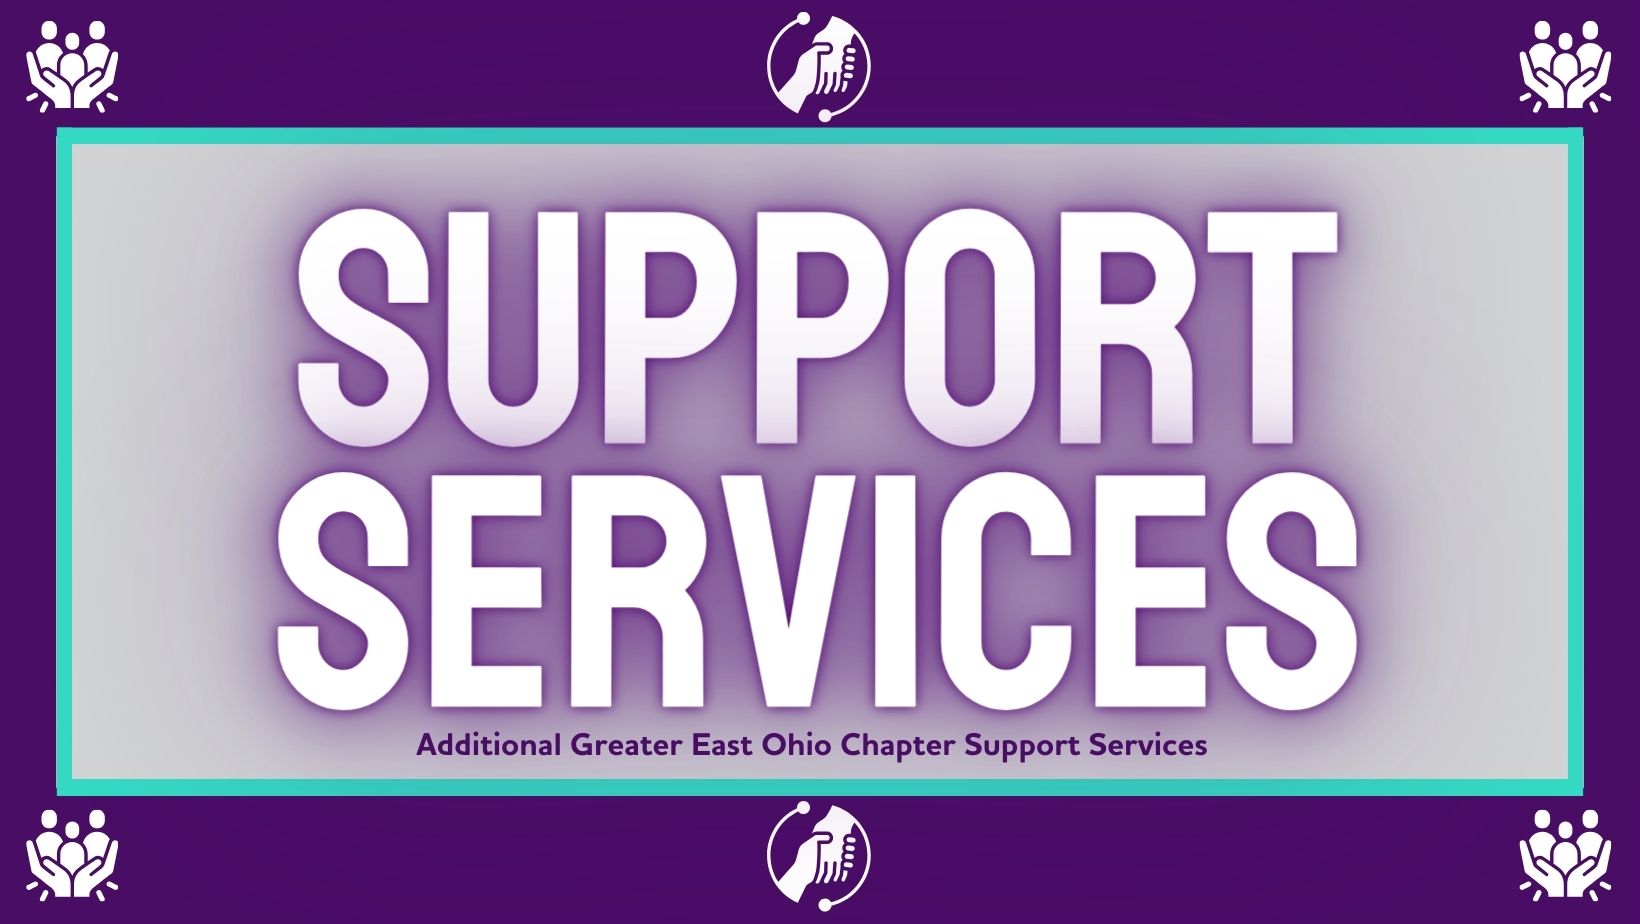 Servicios de soporte del Gran Este de Ohio.jpg